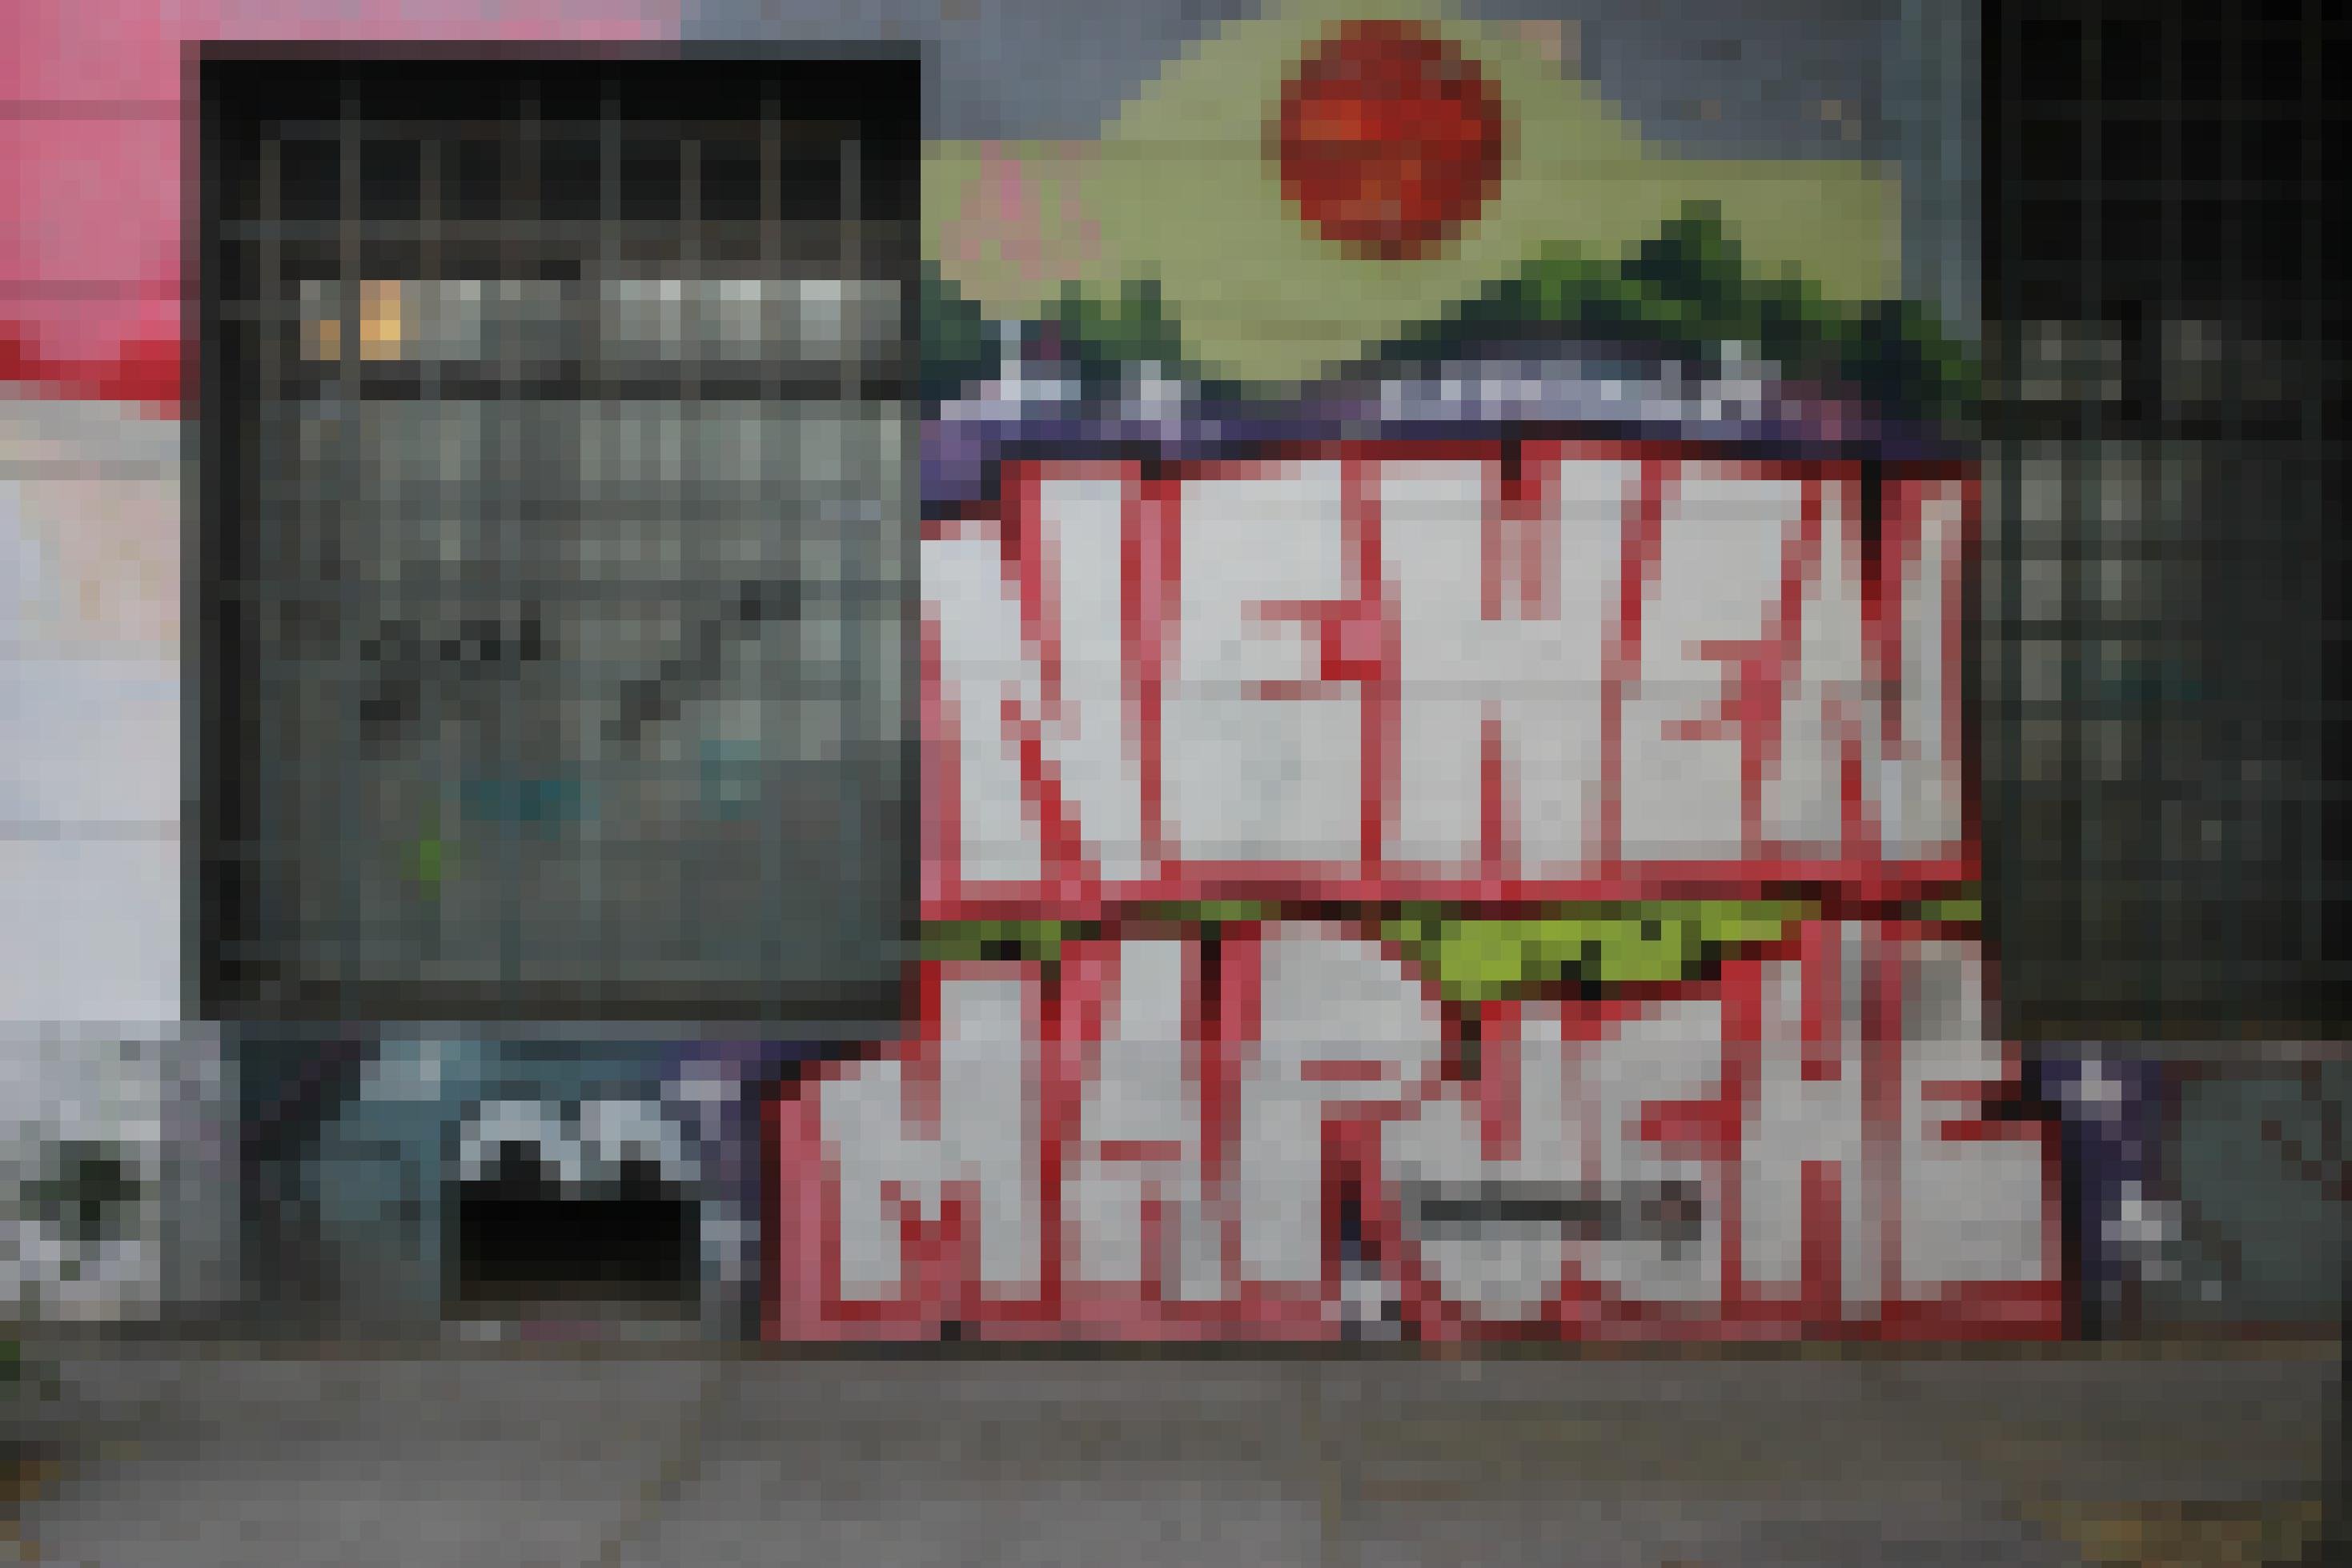 Ein Graffiti in den Straßen von Santiago de Chile: „Newen Mapuche“ was bedeutet Mapuche Energie